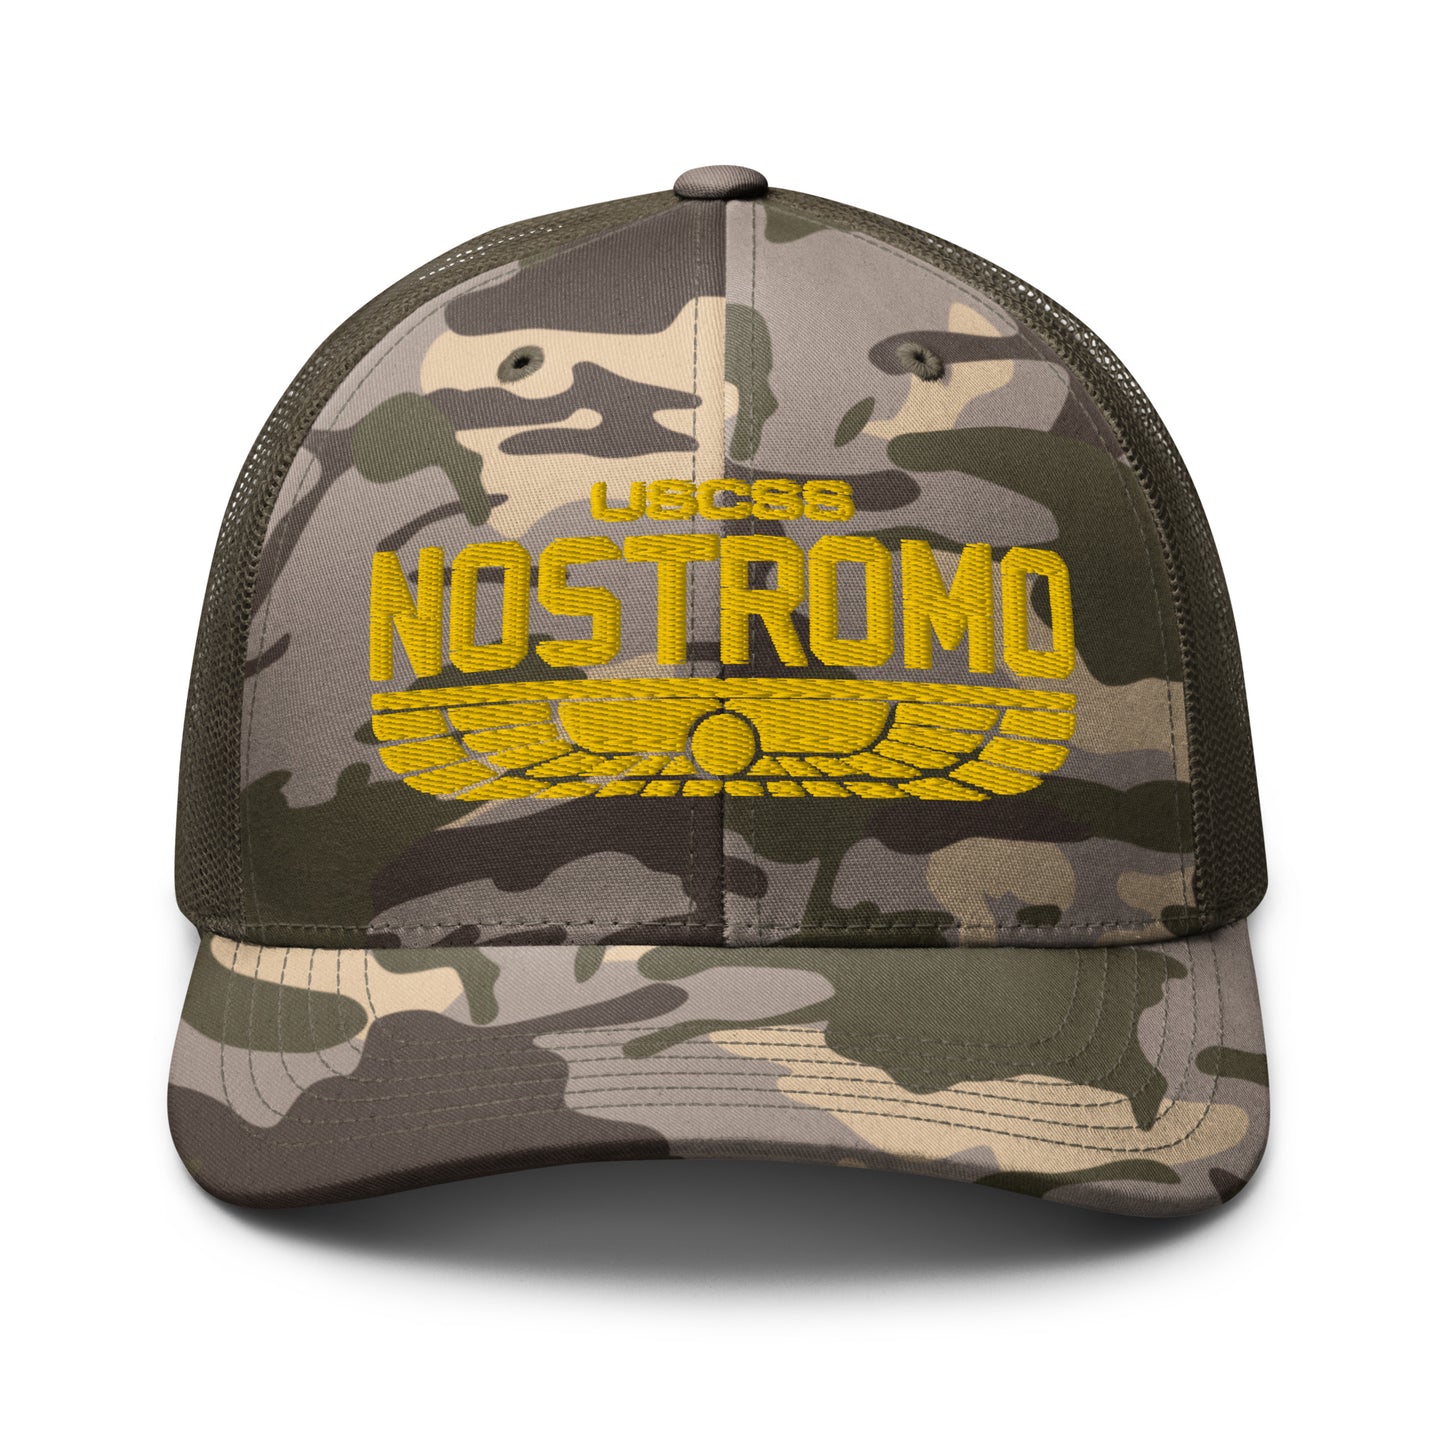 Nostromo Camouflage trucker hat, Alien Movie Cap